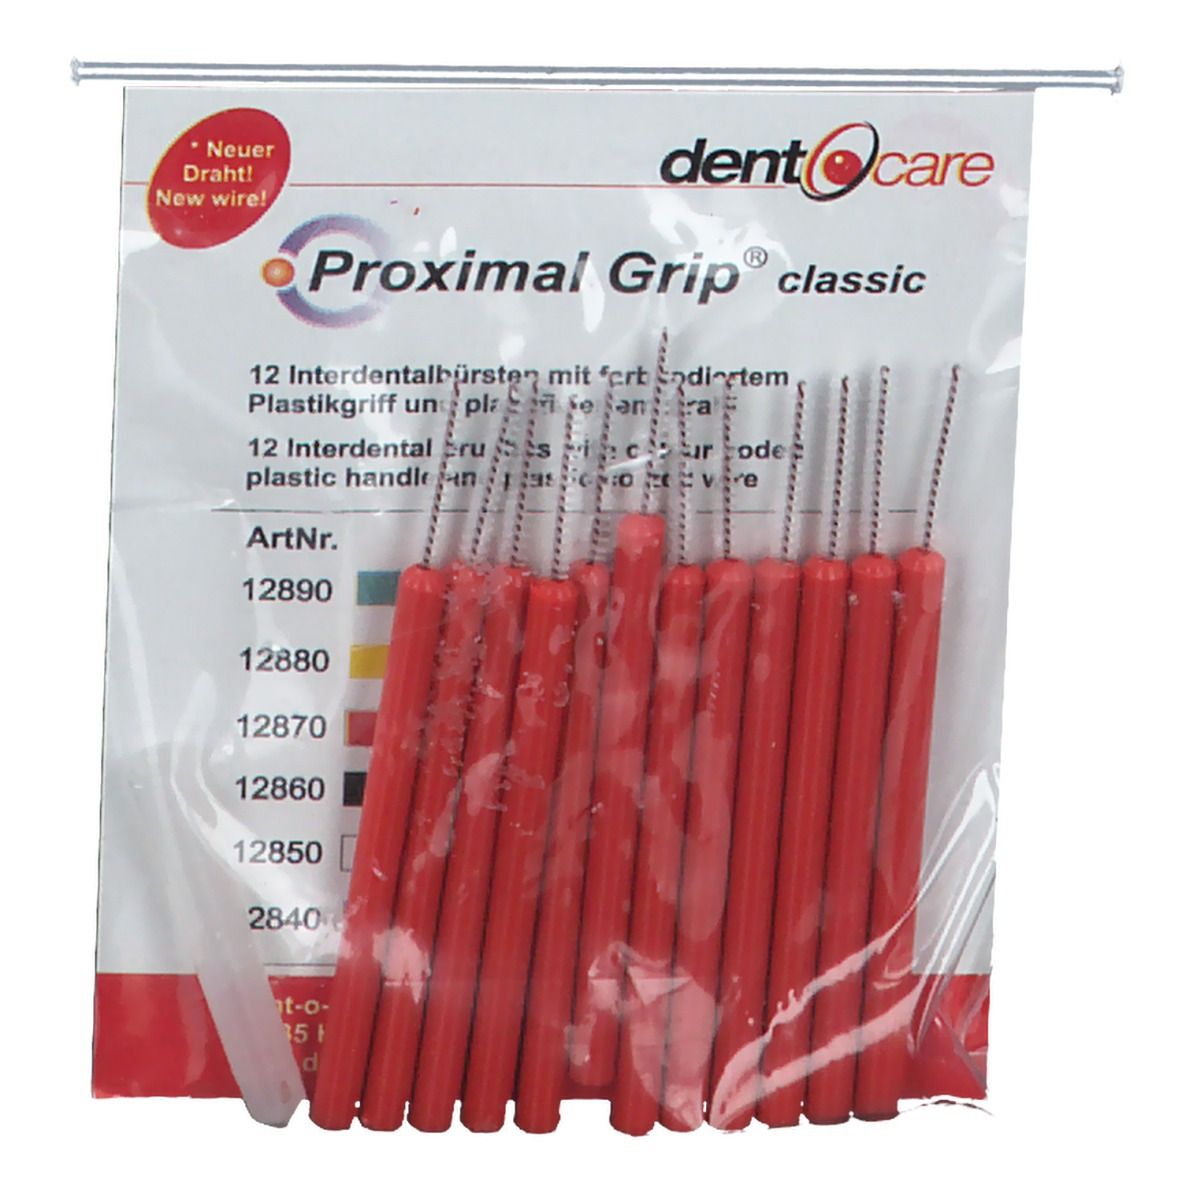 Dent-o-care Proximal Grip xxx-fein rot Interdentalbürste 0,55 mm